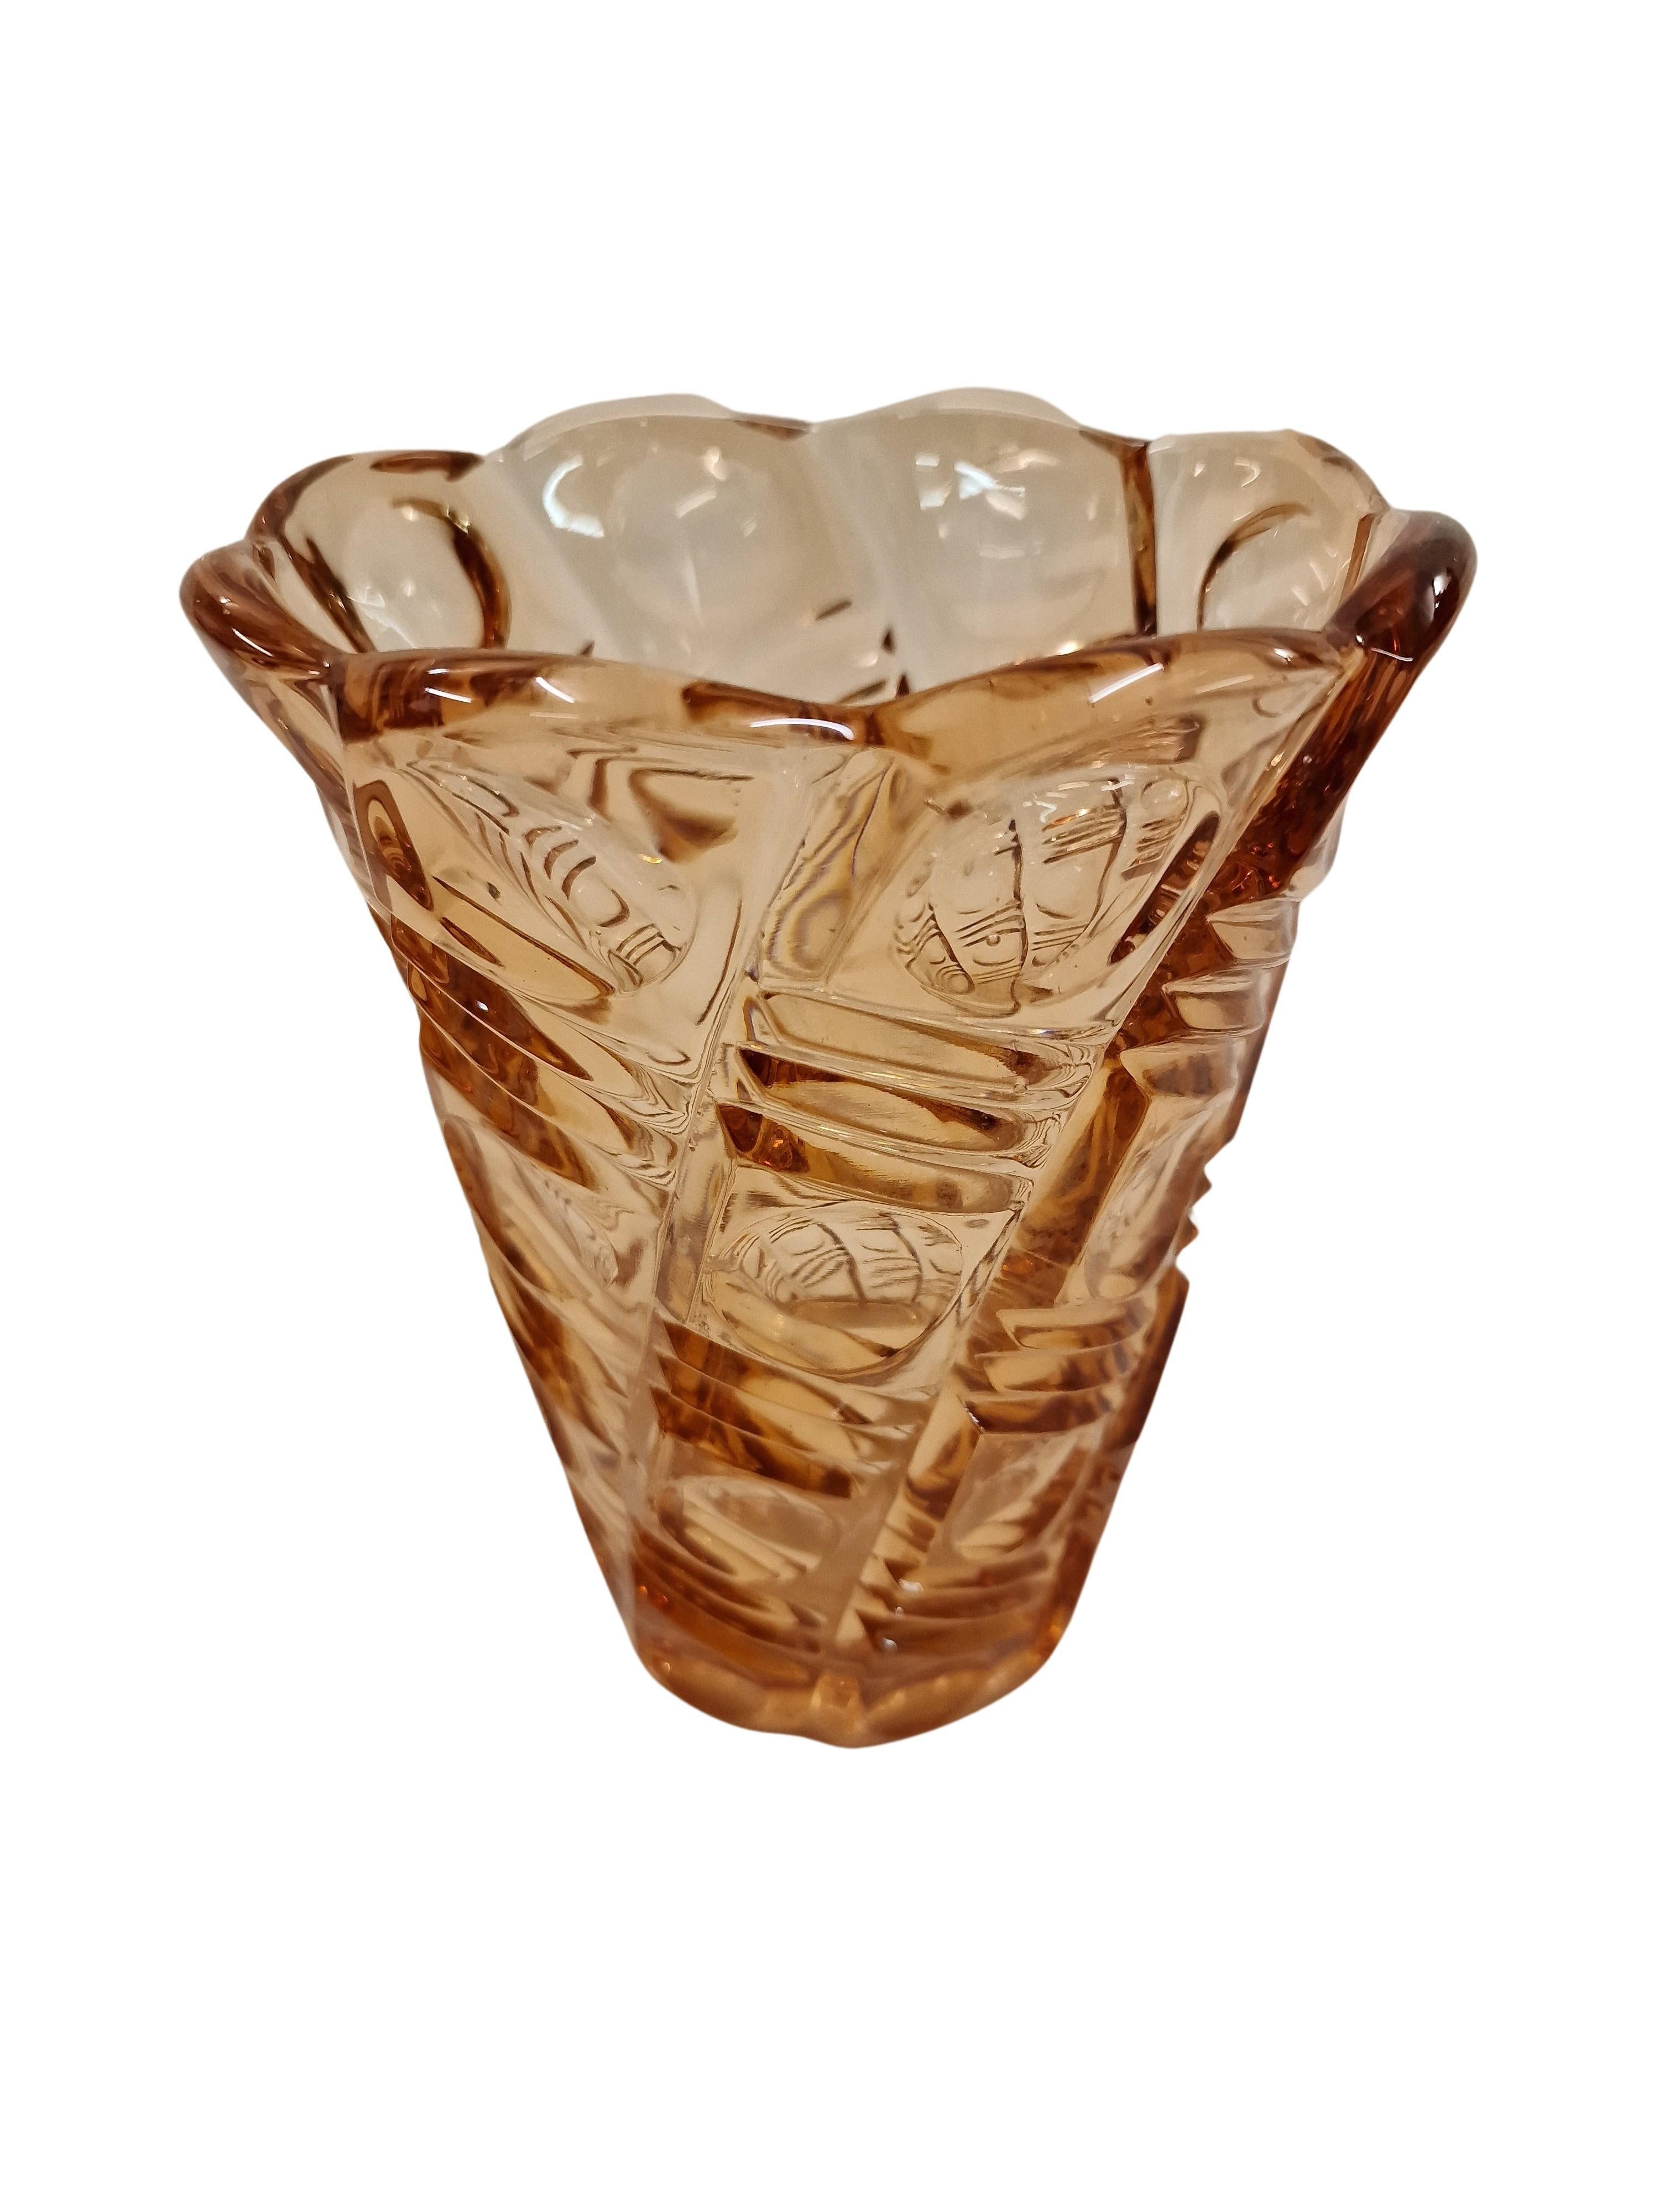 Eine äußerst dekorative Blumenvase, ein Original aus der Zeit des Art déco, hergestellt in den 1920er Jahren in Bohemia, Tschechische Republik. 

Die Vase hat eine runde Basis, die sich nach oben in eine rechteckige Struktur erweitert und dann